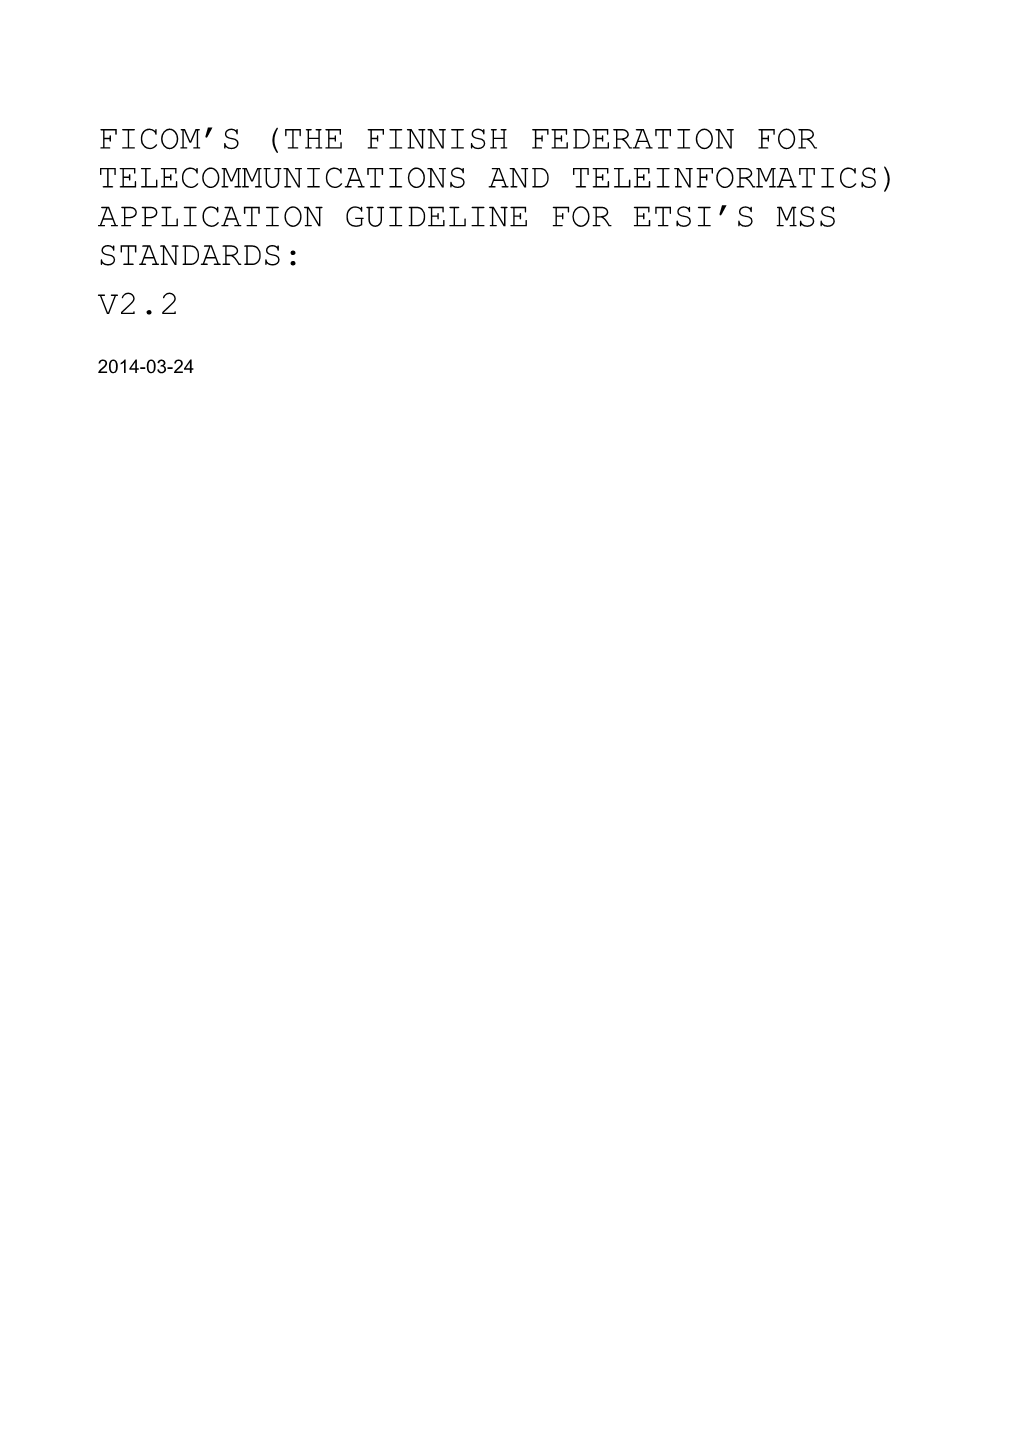 Application Guideline for Etsi's Mss Standards: V2.2